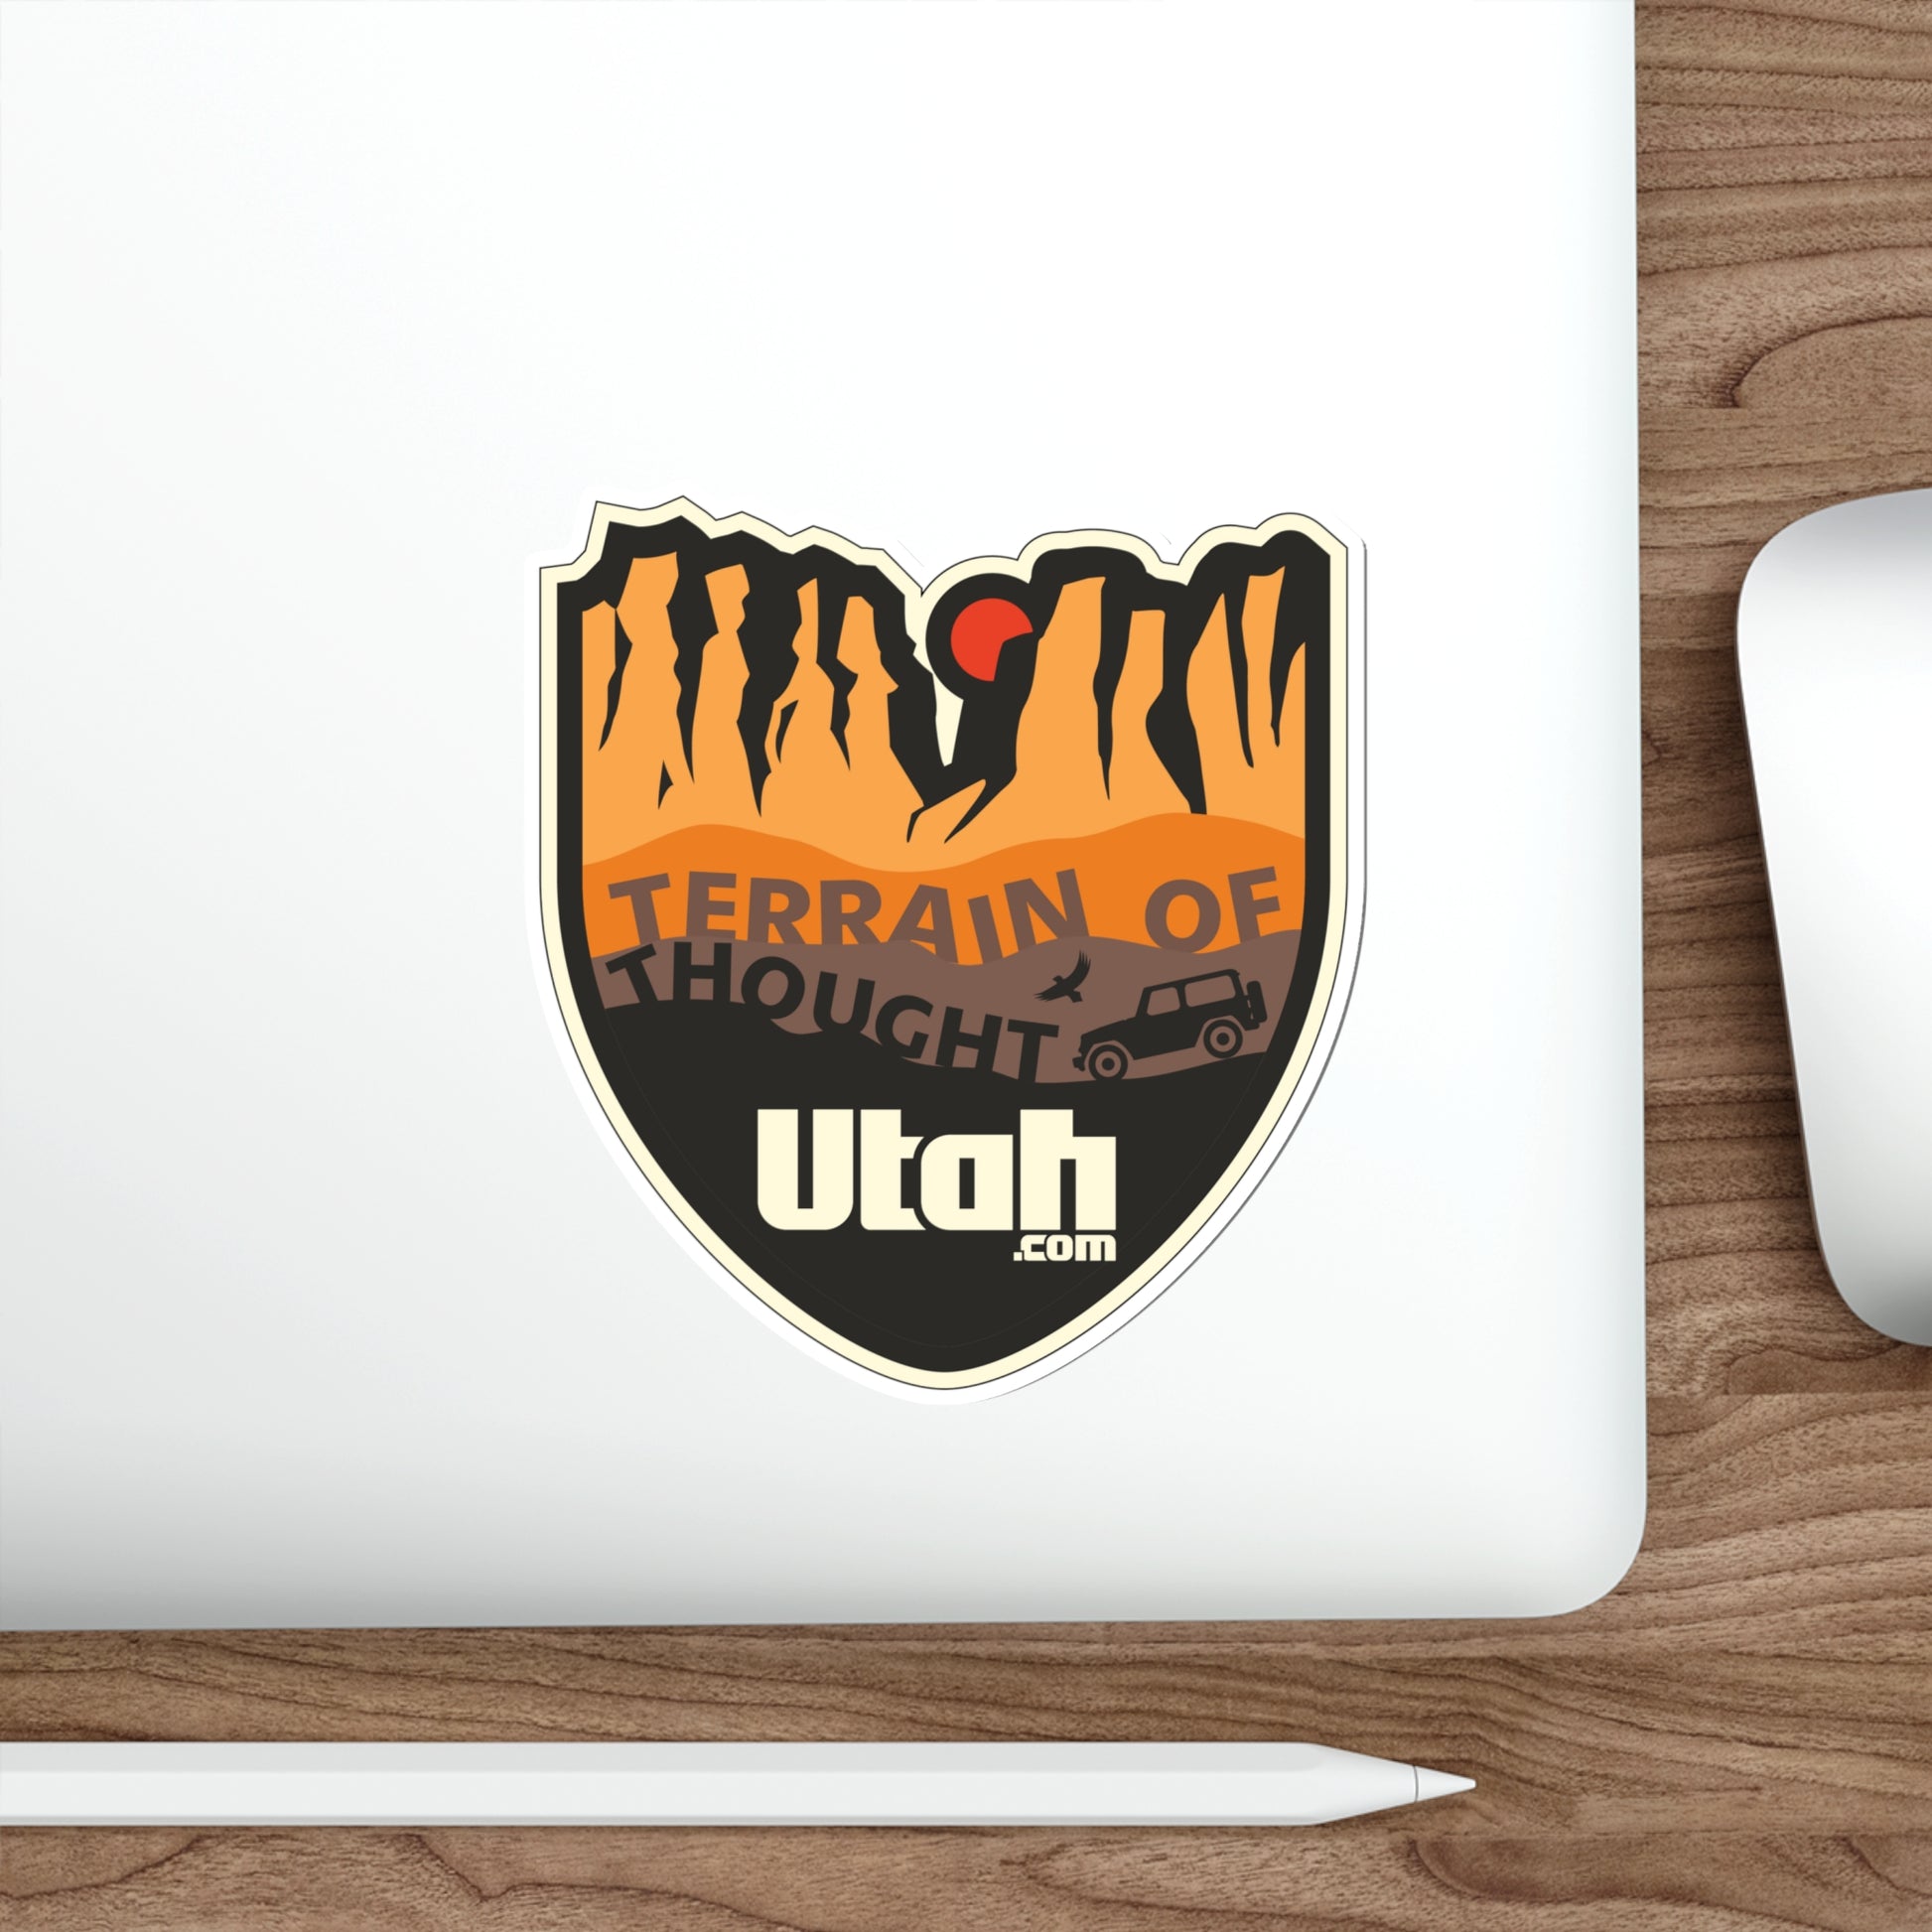 Orange Off-Road “Terrain of Thought” Sticker - Utah.com